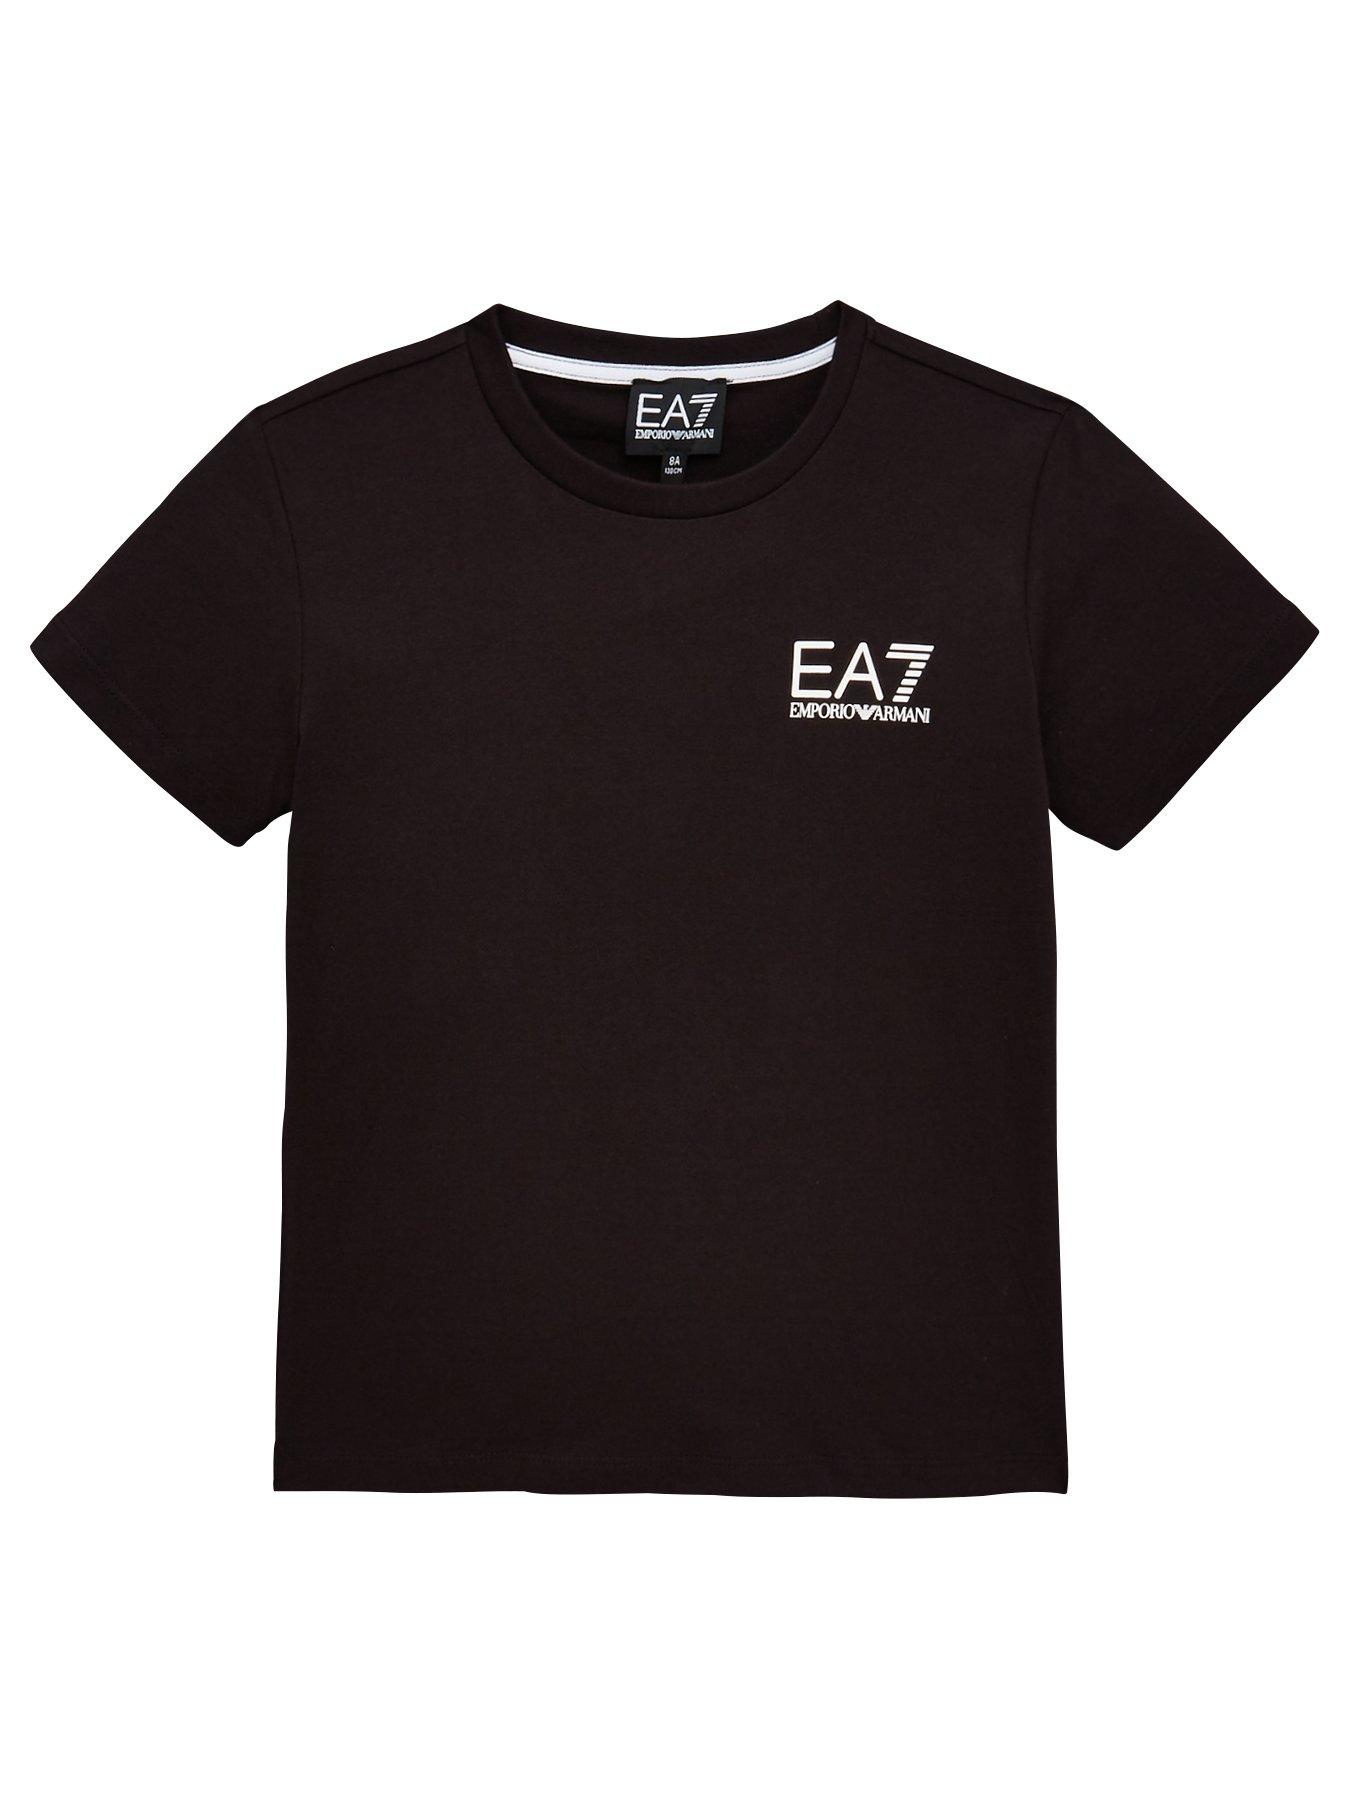 boys ea7 t shirt